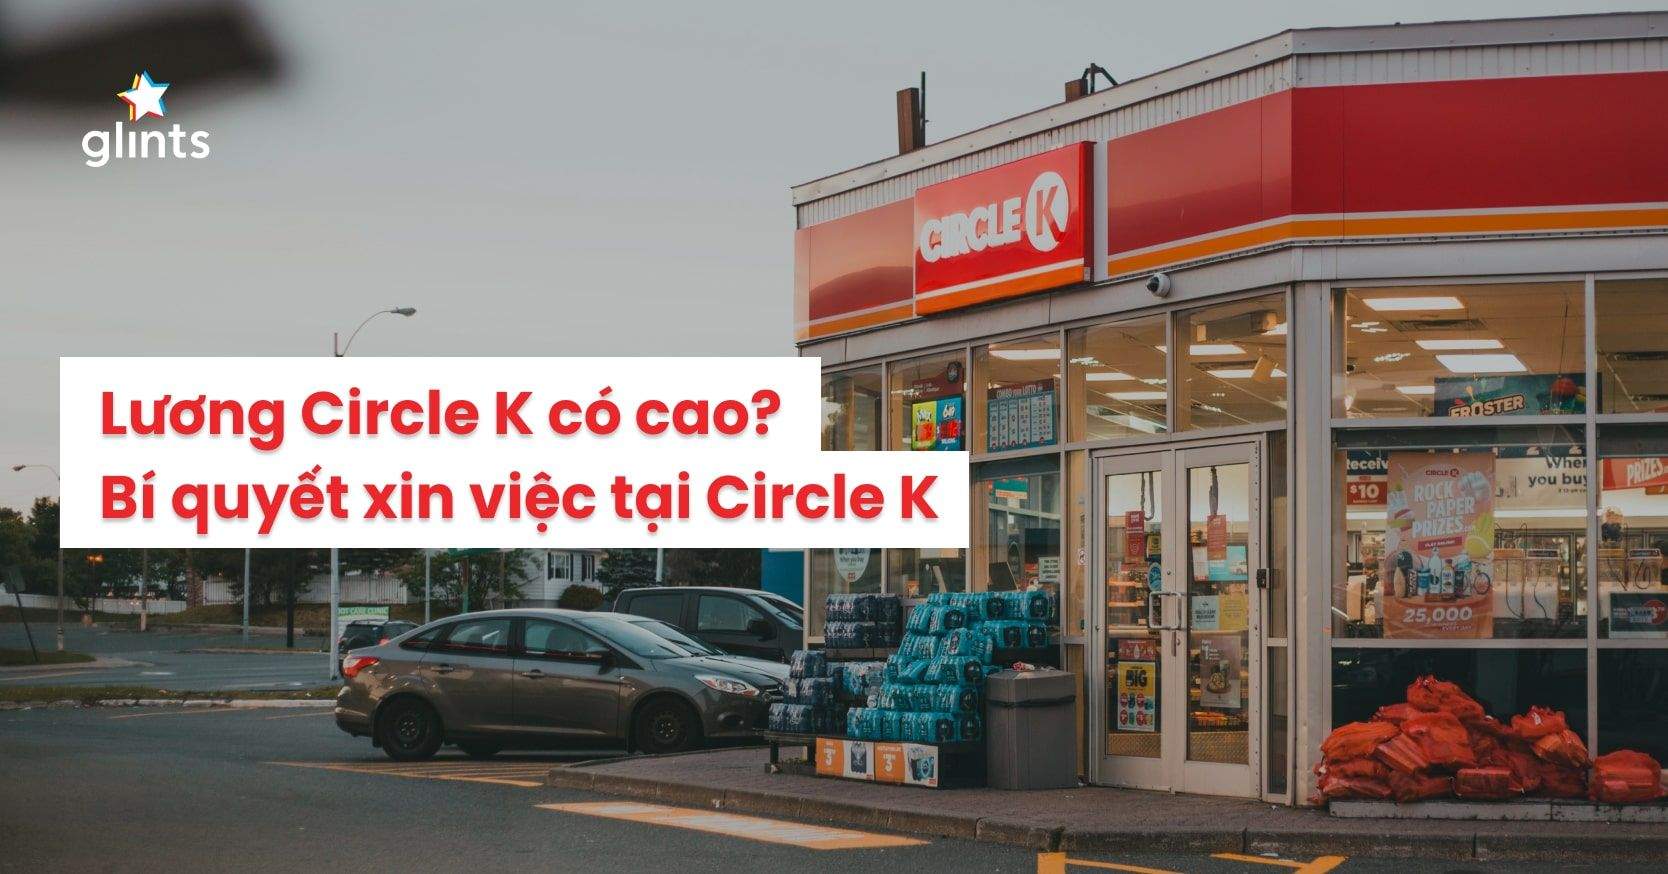 Lương Circle K Cao Không? Kinh Nghiệm Phỏng Vấn Nhân Viên Bán Hàng Tại Circle K